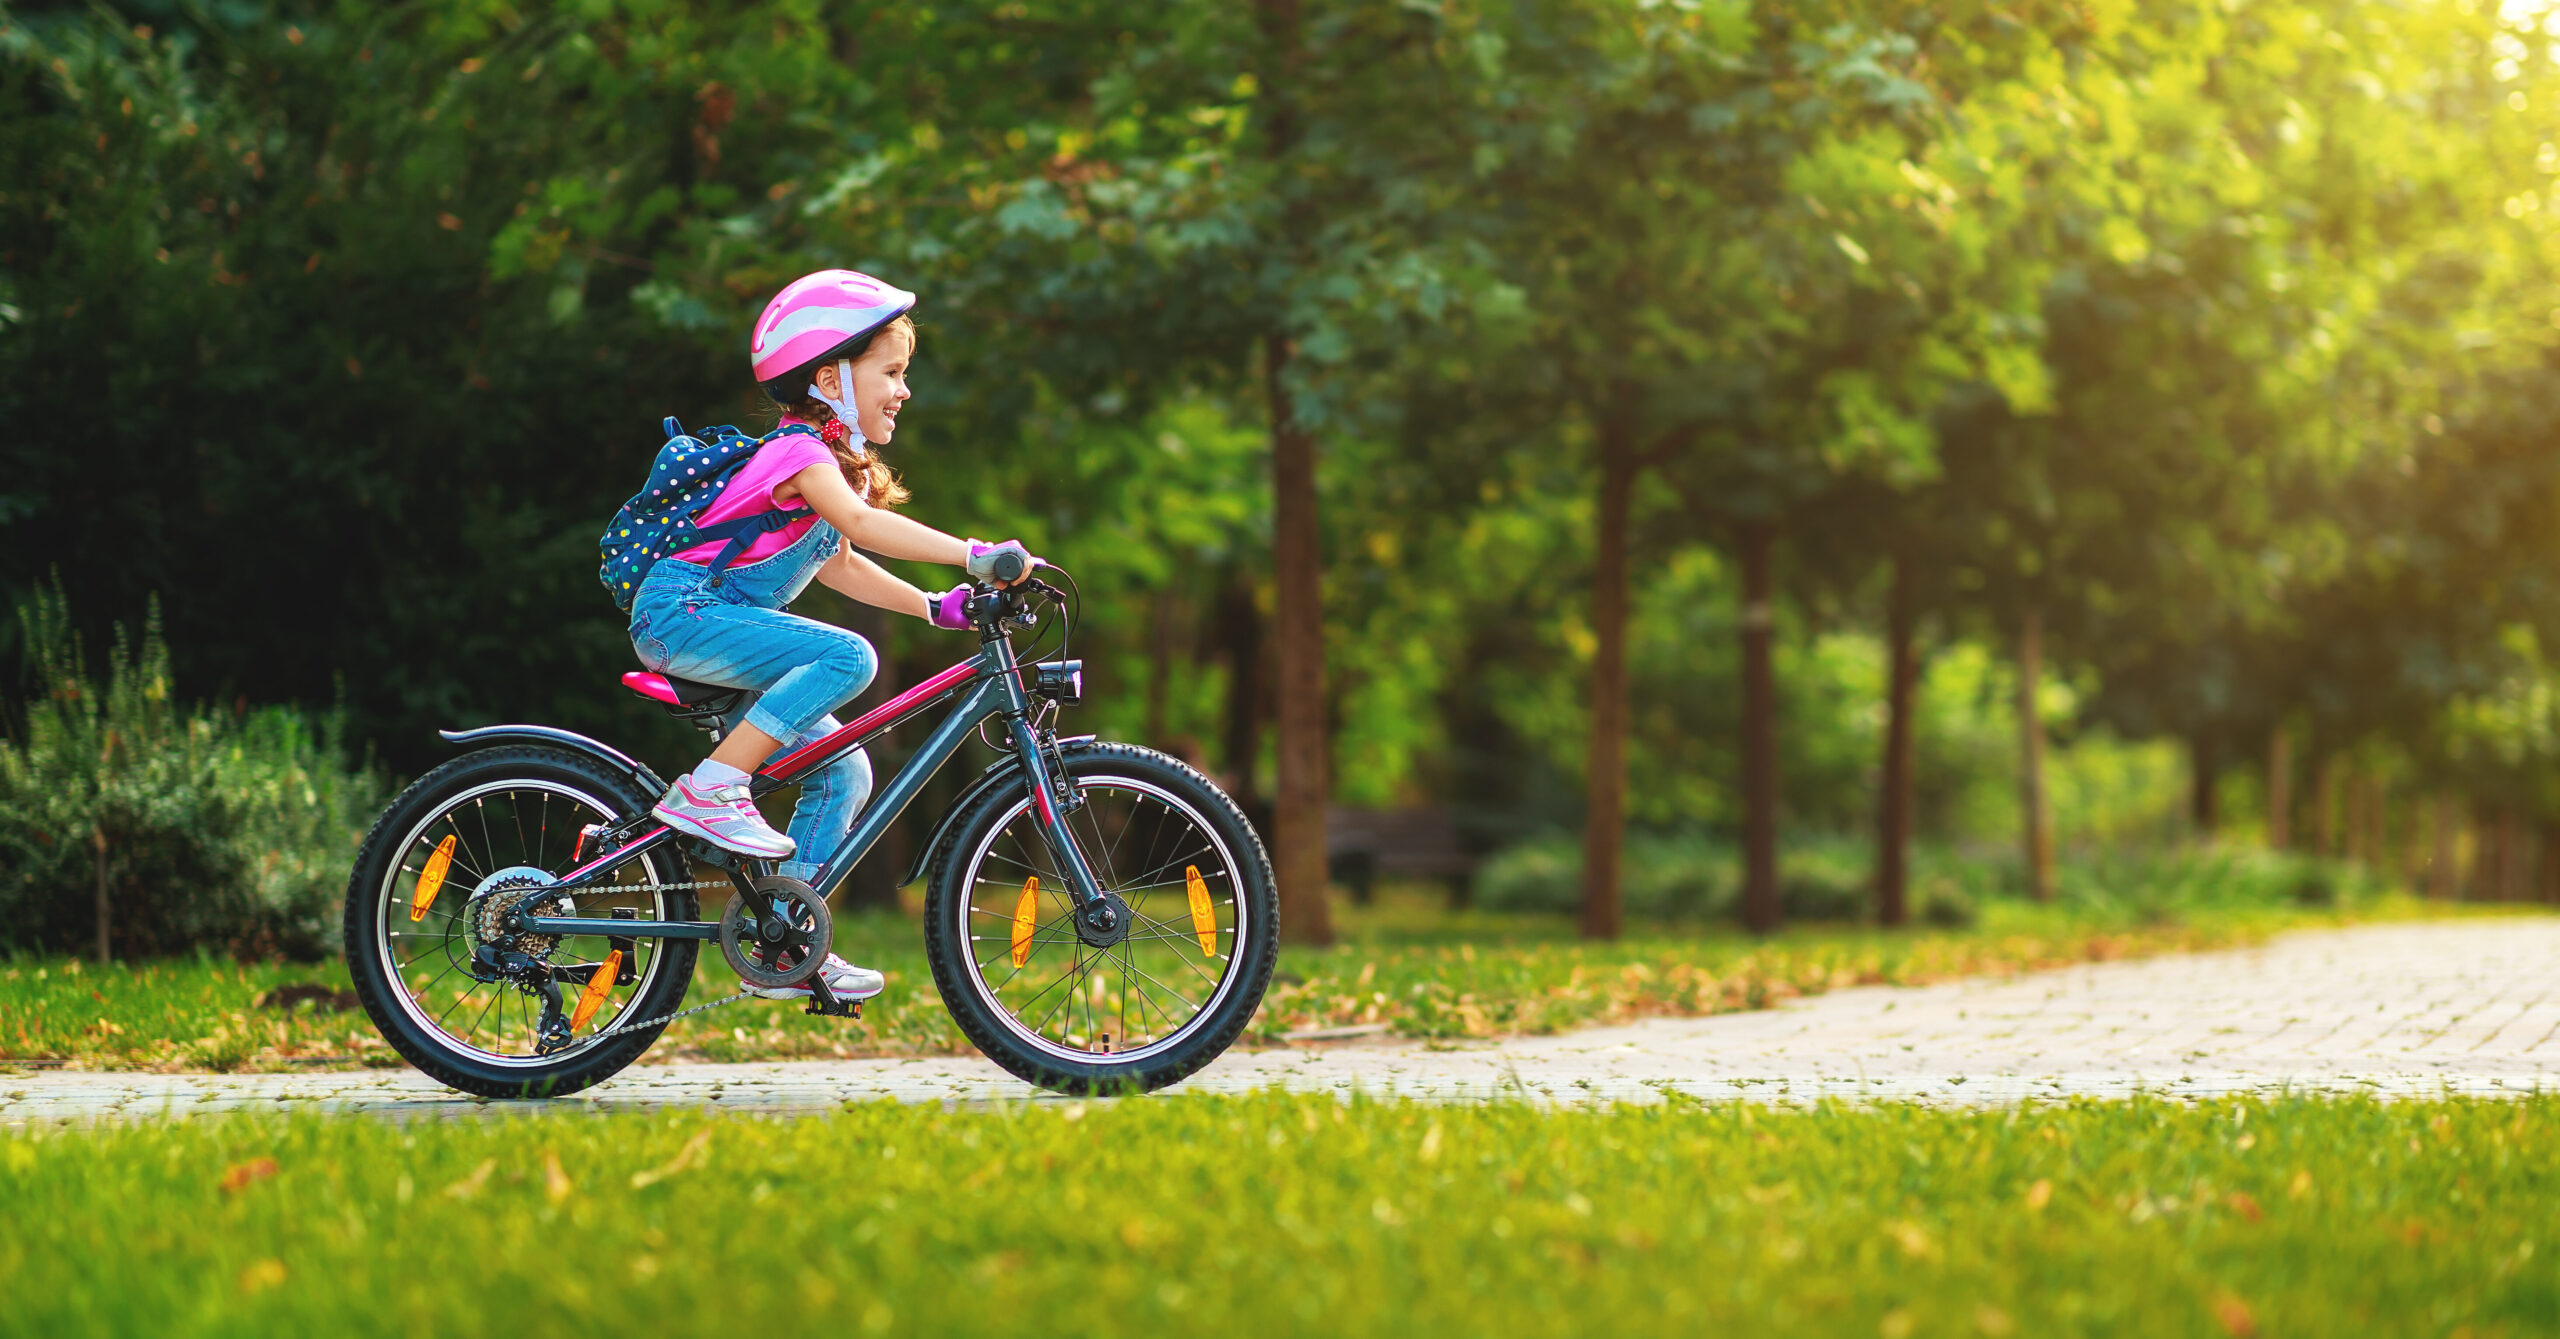 Choisir le meilleur vélo 22 pouces pour votre enfant : les critères essentiels